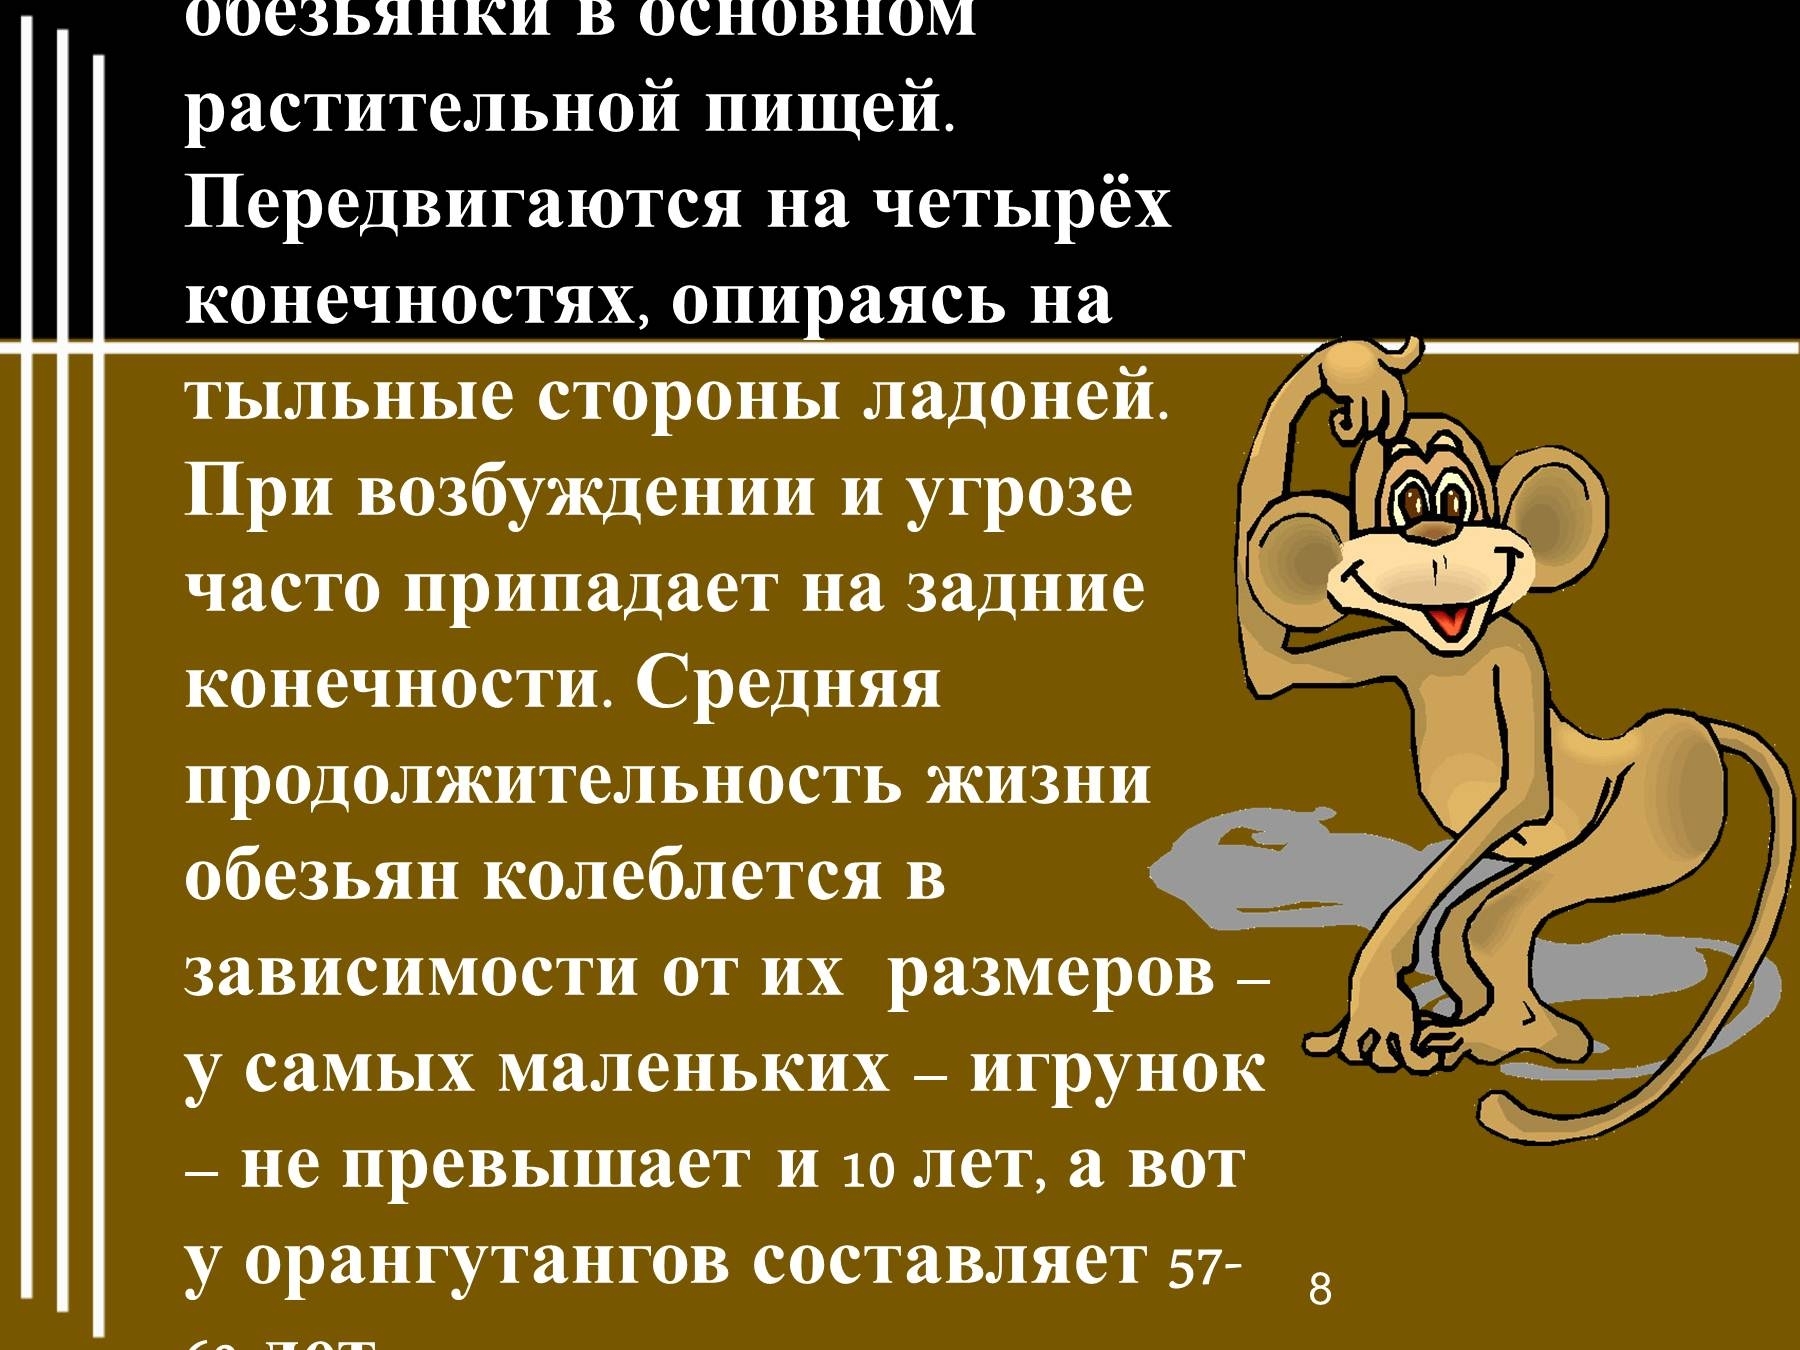 План текста про обезьянку